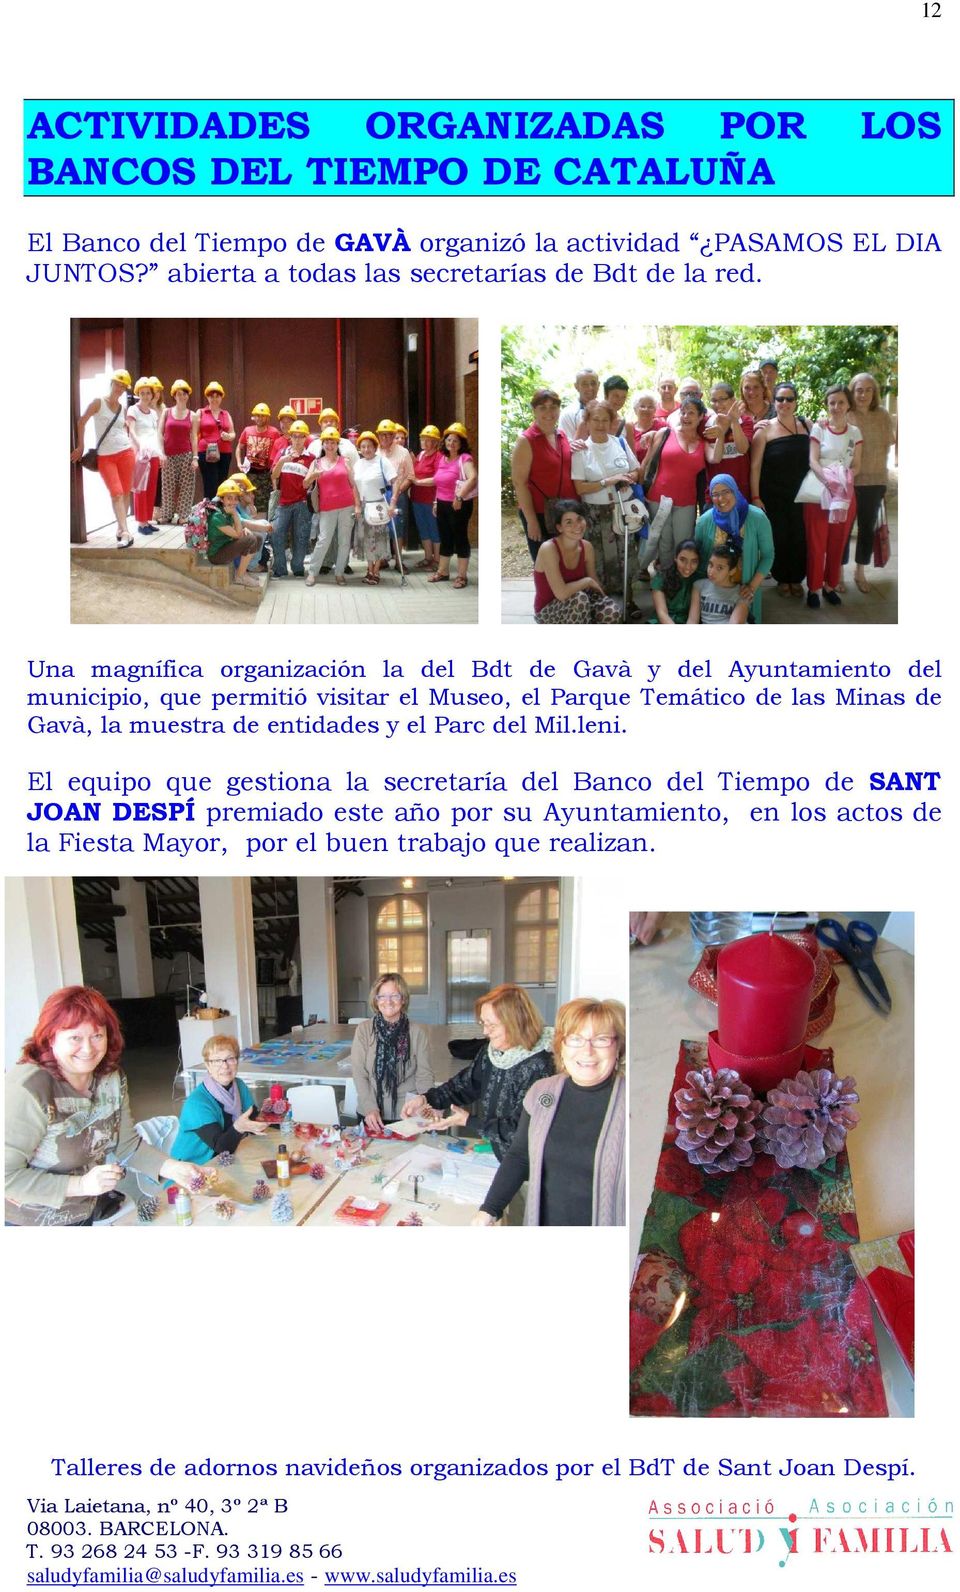 Una magnífica organización la del Bdt de Gavà y del Ayuntamiento del municipio, que permitió visitar el Museo, el Parque Temático de las Minas de Gavà, la